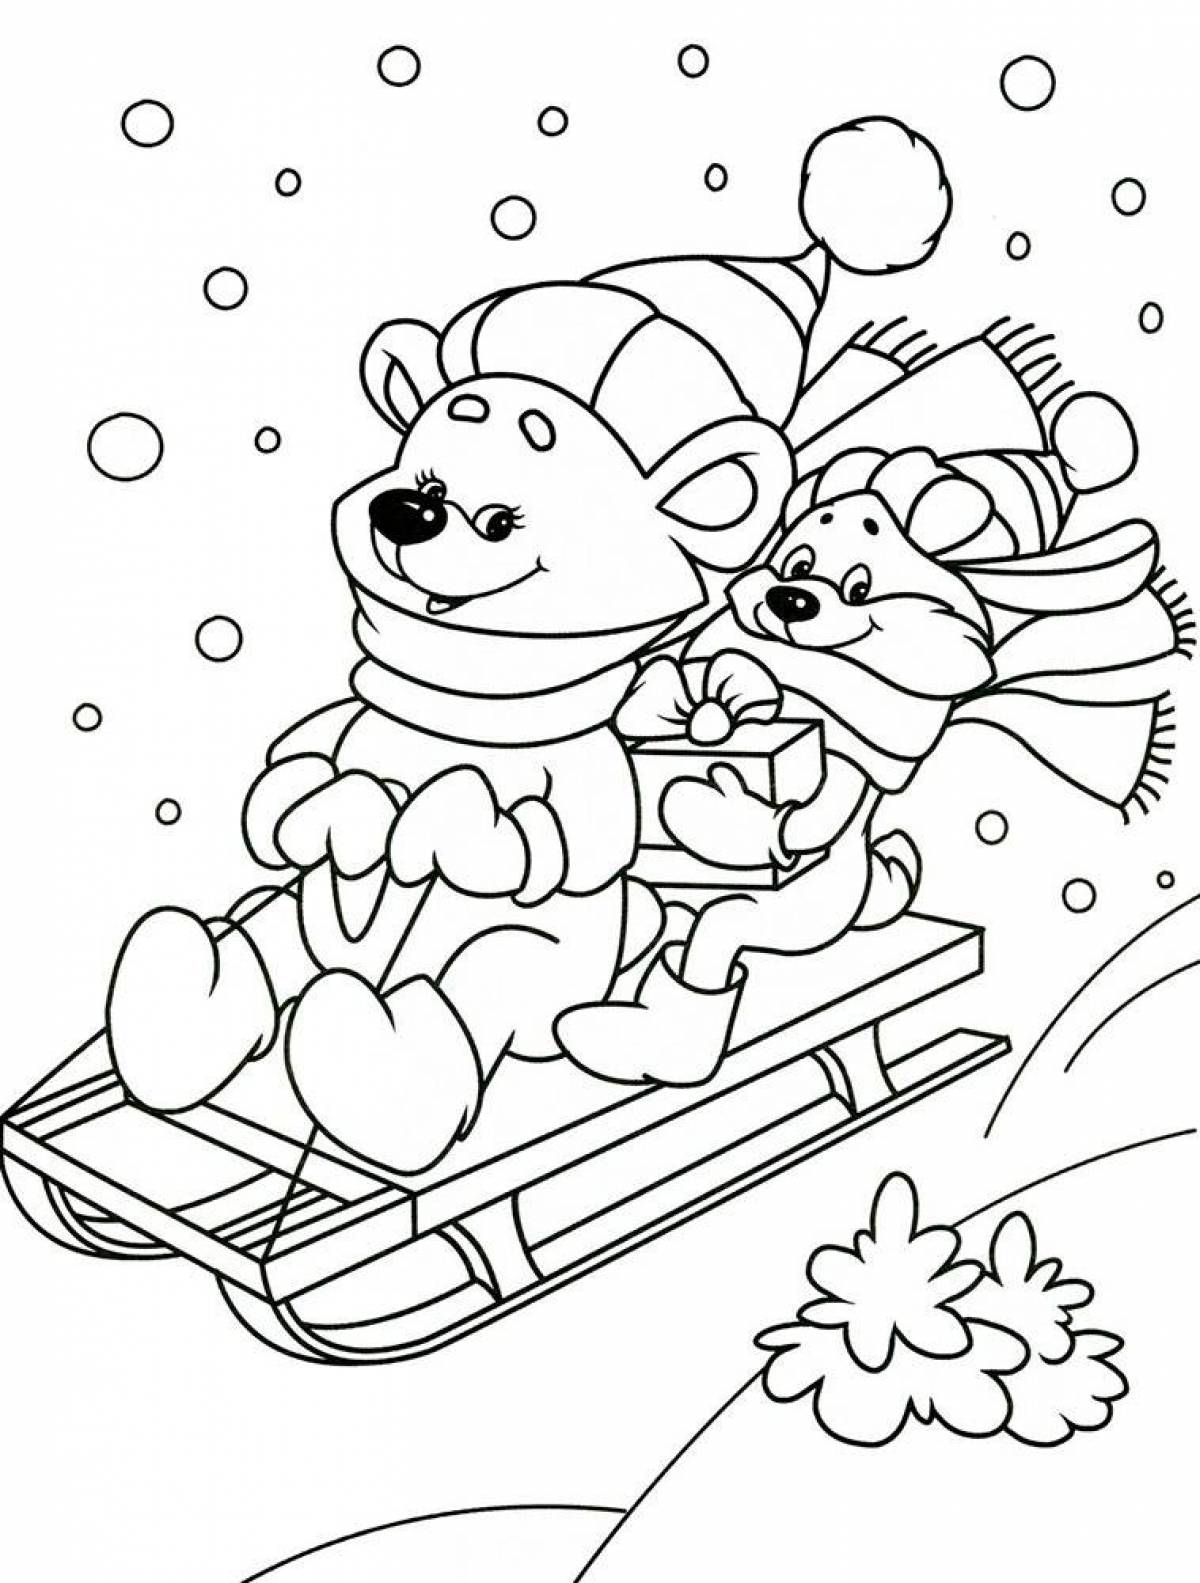 Сказочная раскраска зима для детей 6-7 лет